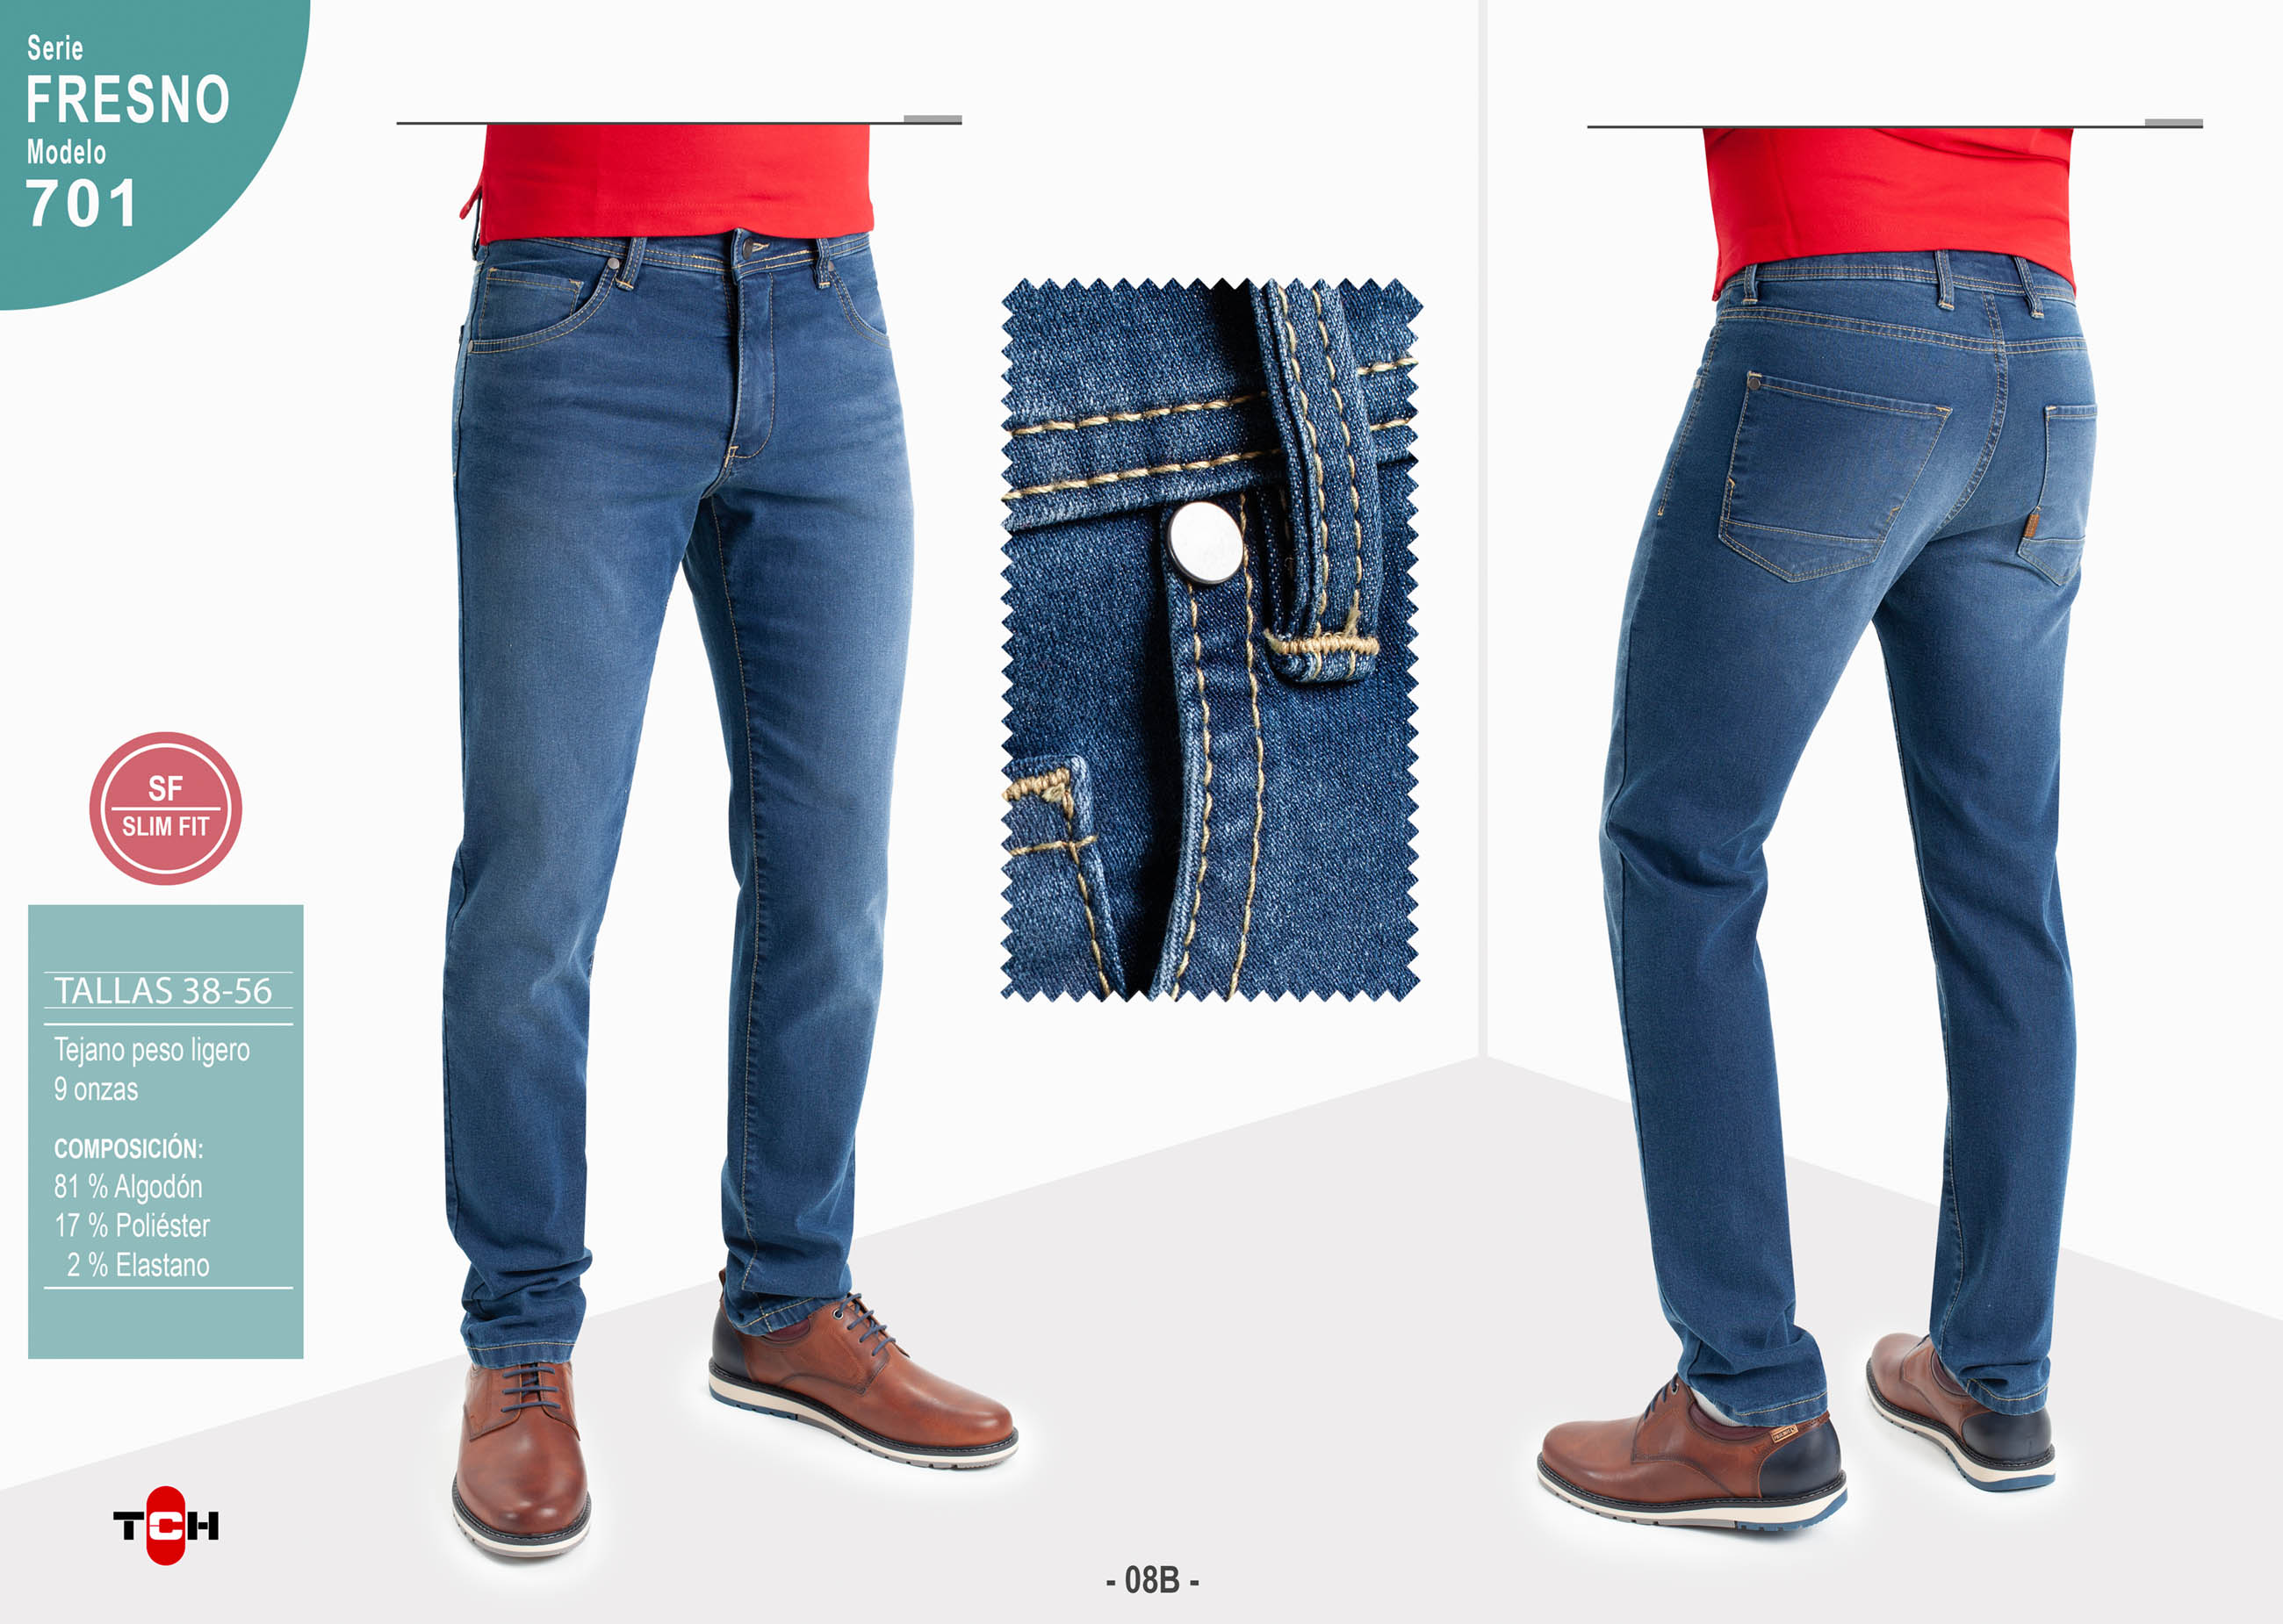 Jeans de hombre, pantalón vaquero en tejido denim azul medio lavado con desgastes de algodón con lycra e hilo a contraste en línea Slim Fit.